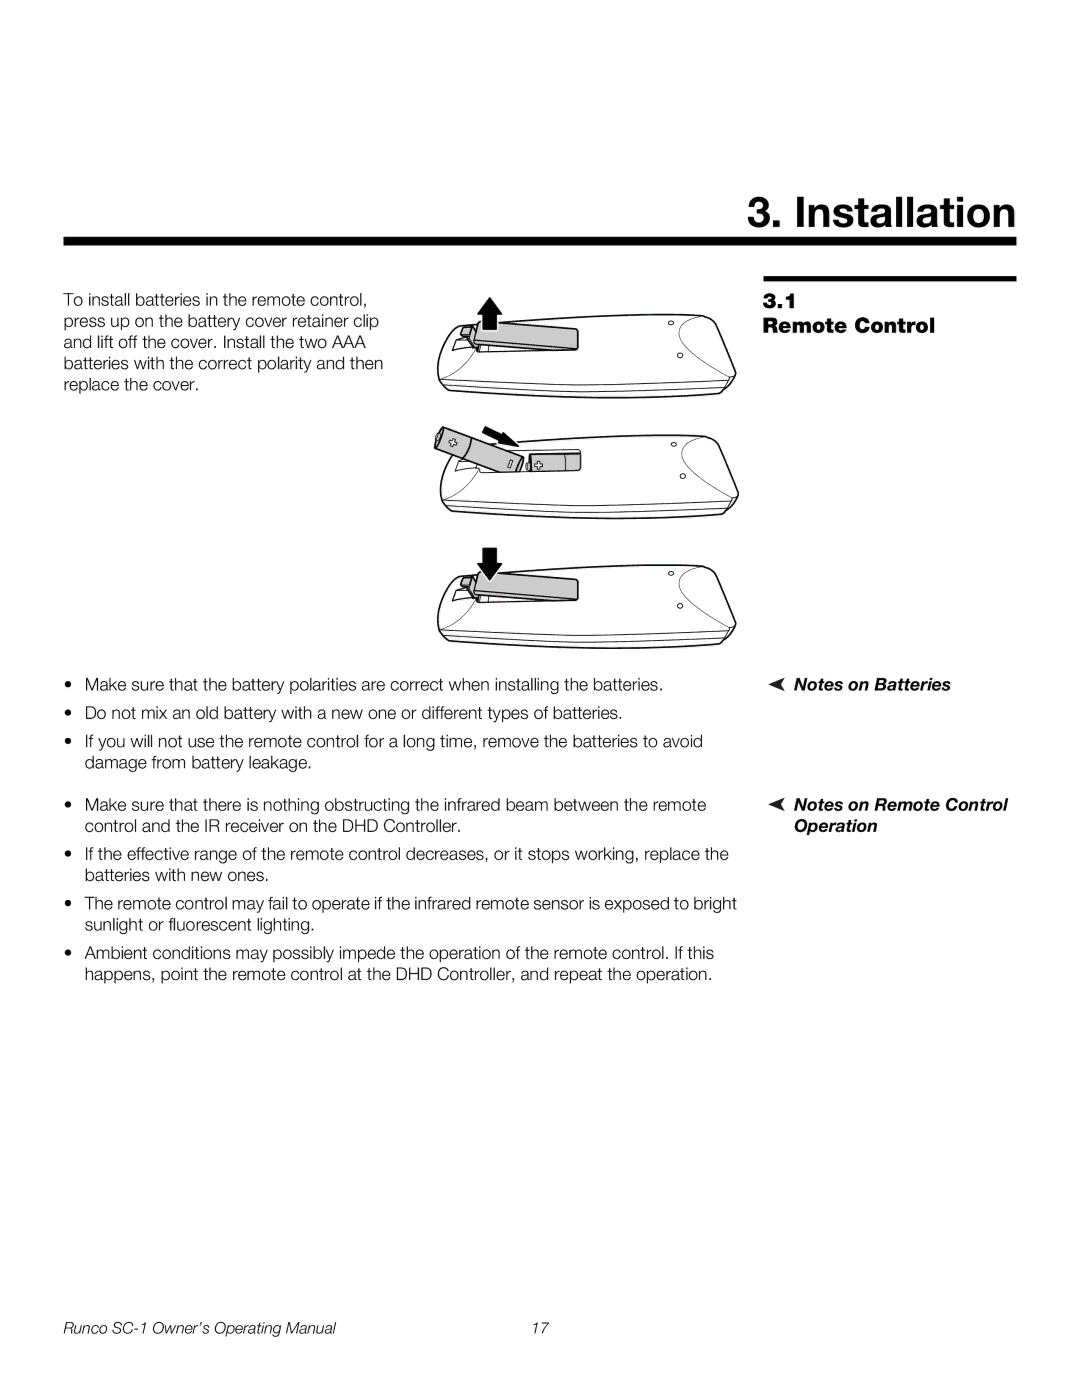 Runco SC-1 manual Installation, Remote Control 